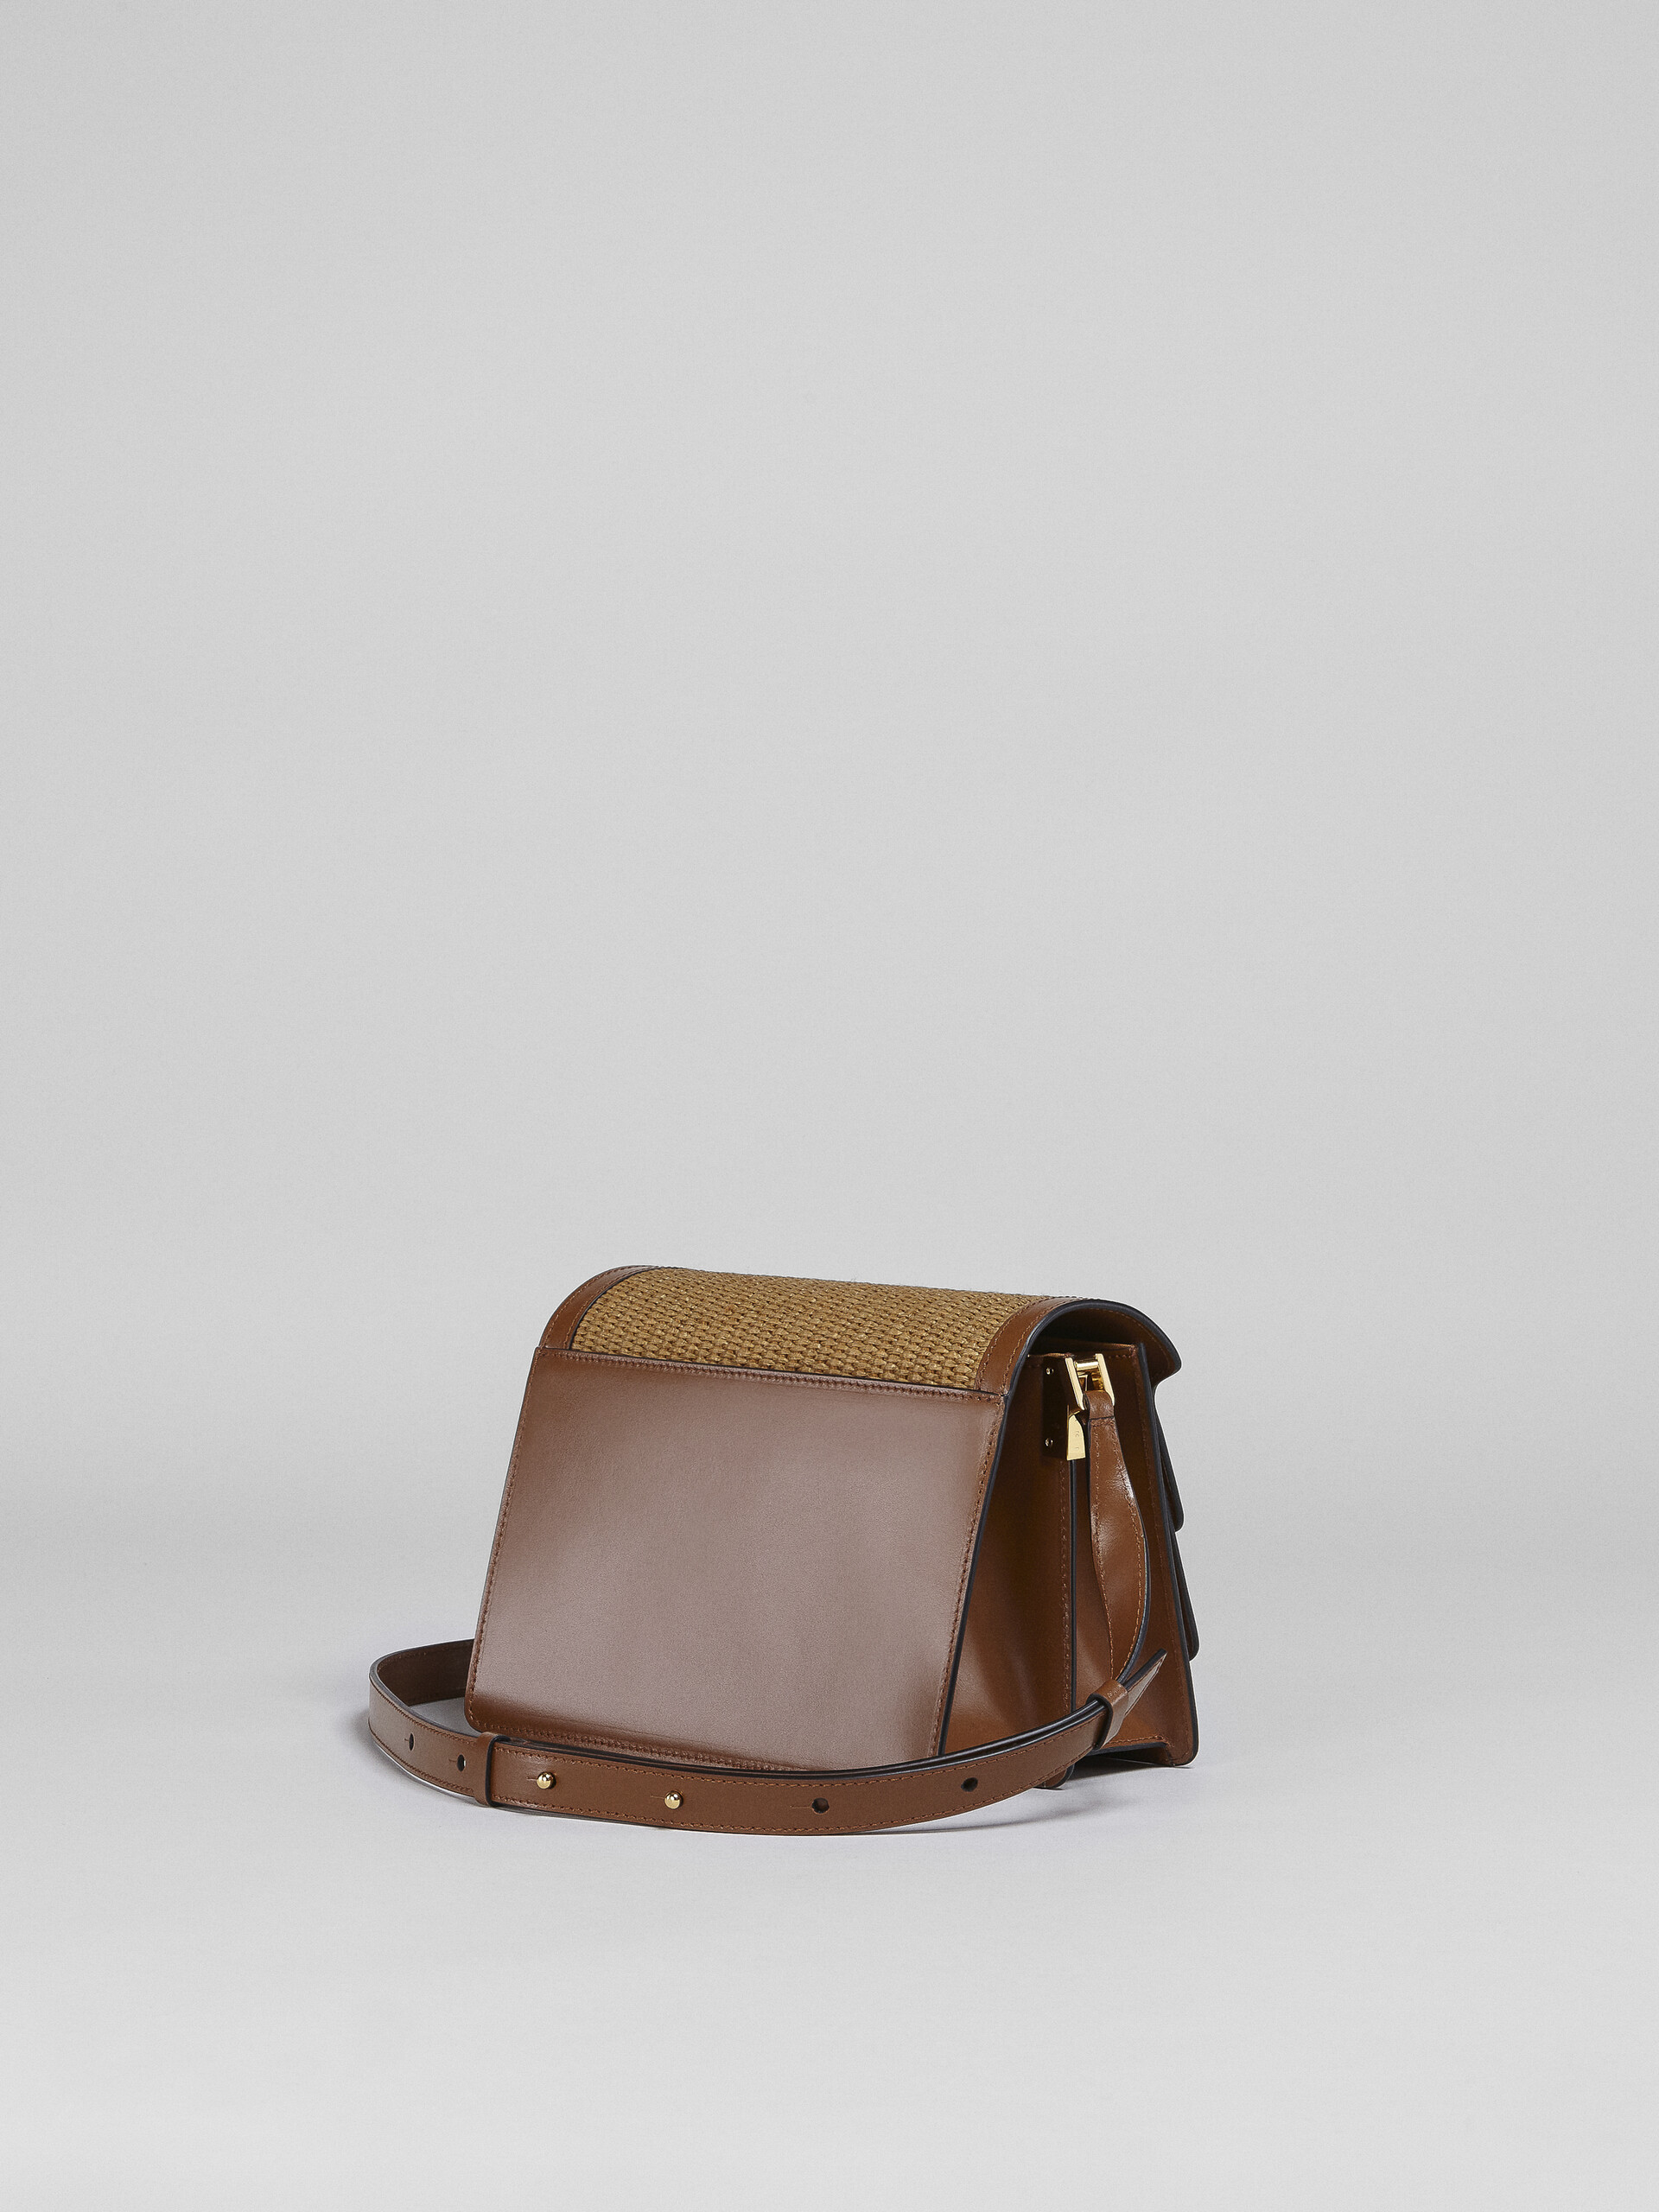 TRUNK SOFT medium bag in brown leather and raffia - Shoulder Bag - Image 3